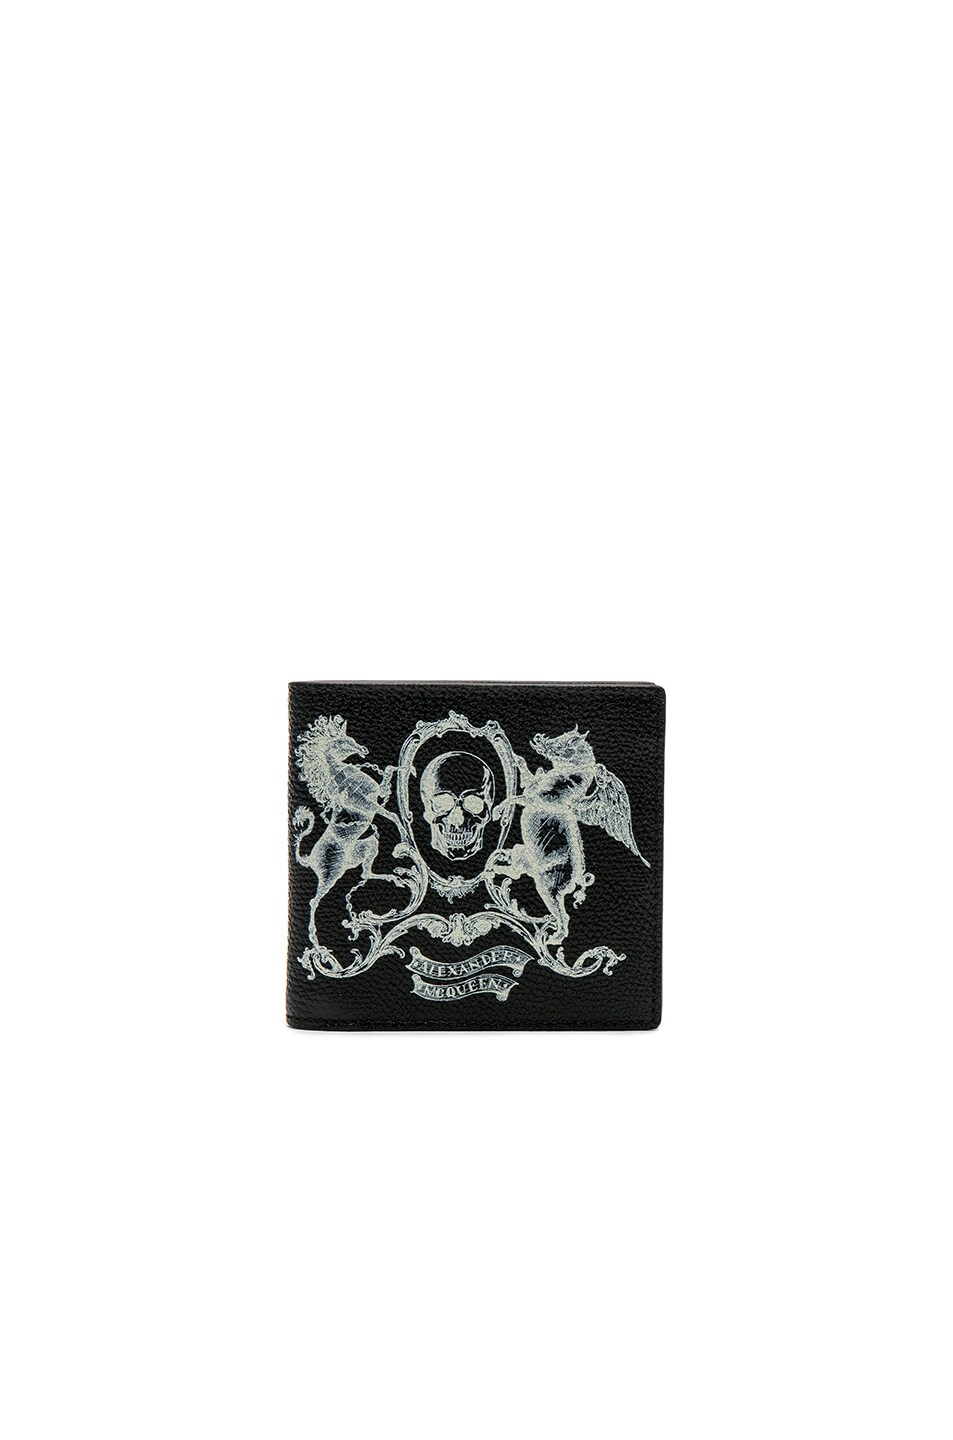 Image 1 of Alexander McQueen Coat of Arms Billfold Wallet in Black & Ivory